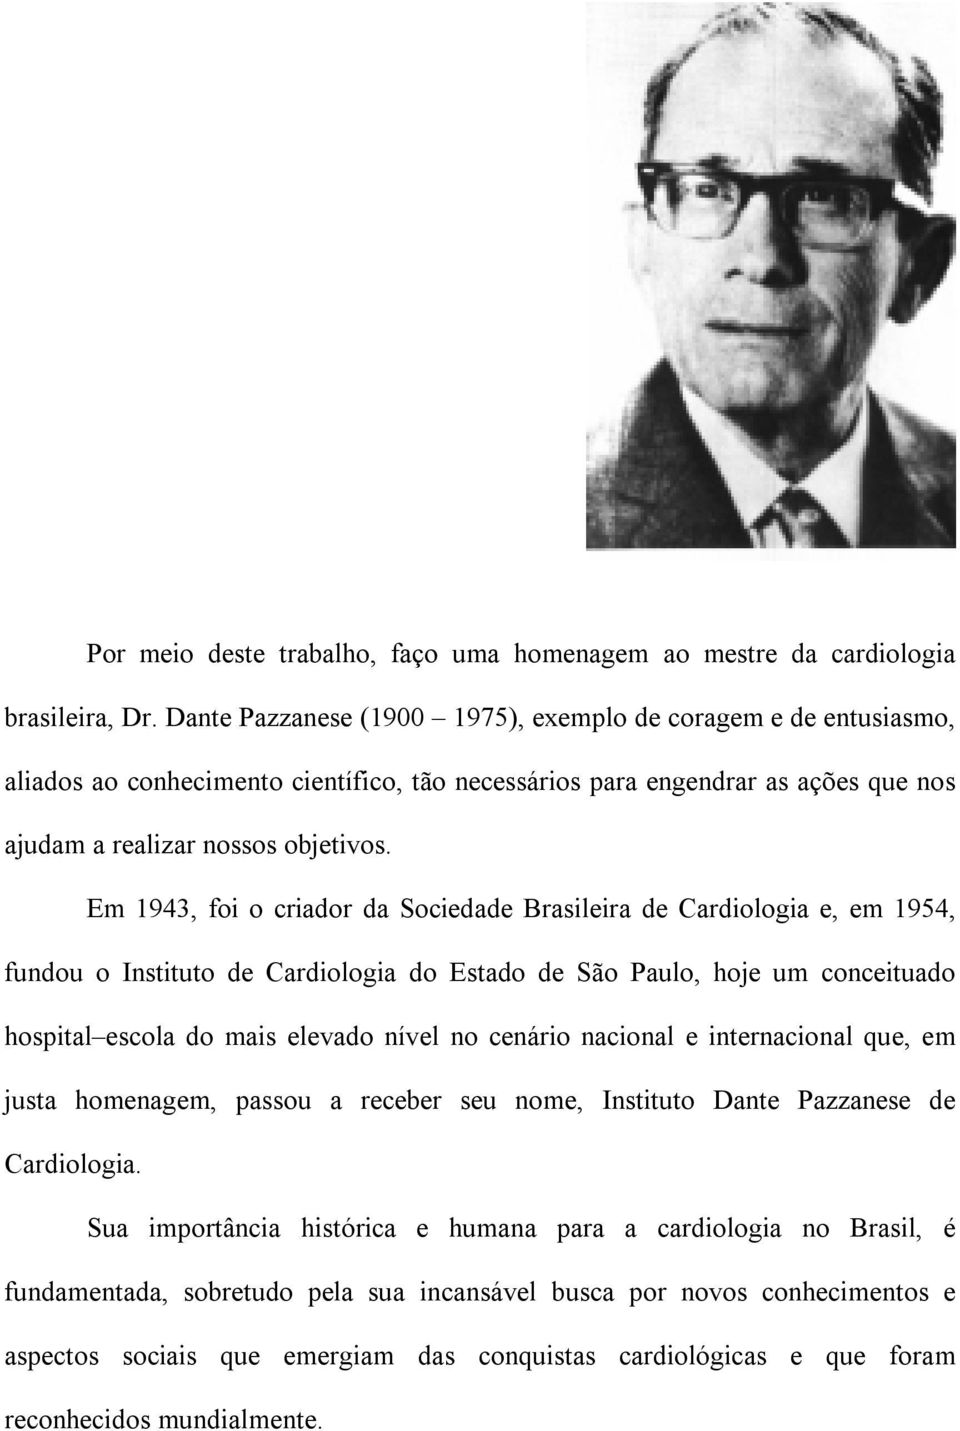 Em 1943, foi o criador da Sociedade Brasileira de Cardiologia e, em 1954, fundou o Instituto de Cardiologia do Estado de São Paulo, hoje um conceituado hospital escola do mais elevado nível no